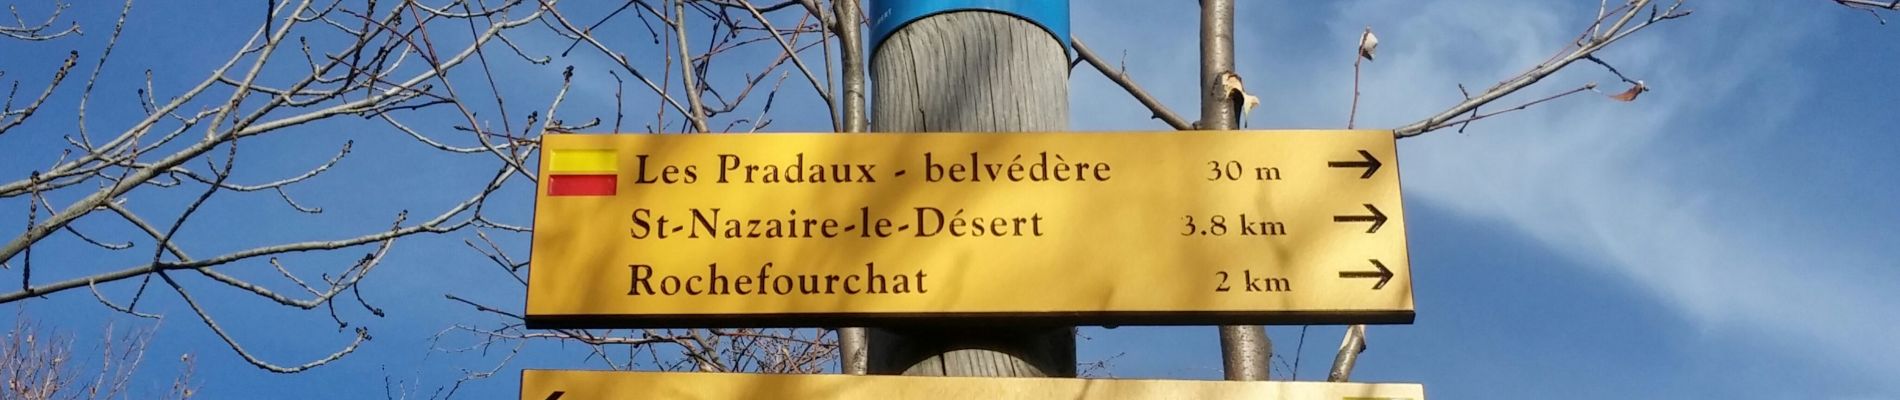 Percorso Marcia Saint-Nazaire-le-Désert - bergeries de pradaux saint Nazaire le désert - Photo